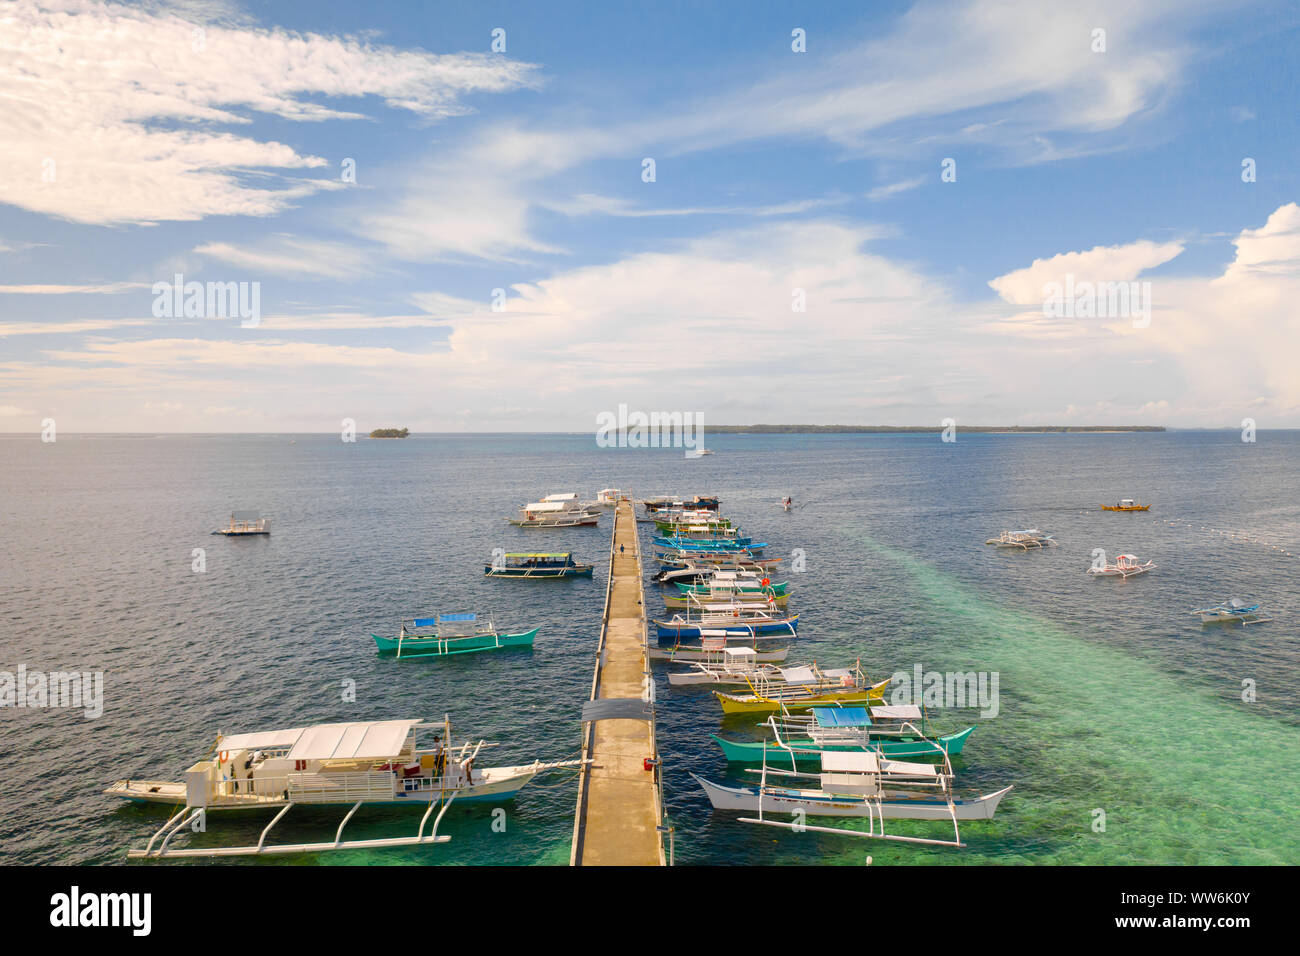 Paesaggio marino con barche e nuvole. Molte imbarcazioni turistiche nella baia durante il giorno. Siargao, Filippine, vista dall'alto. Foto Stock